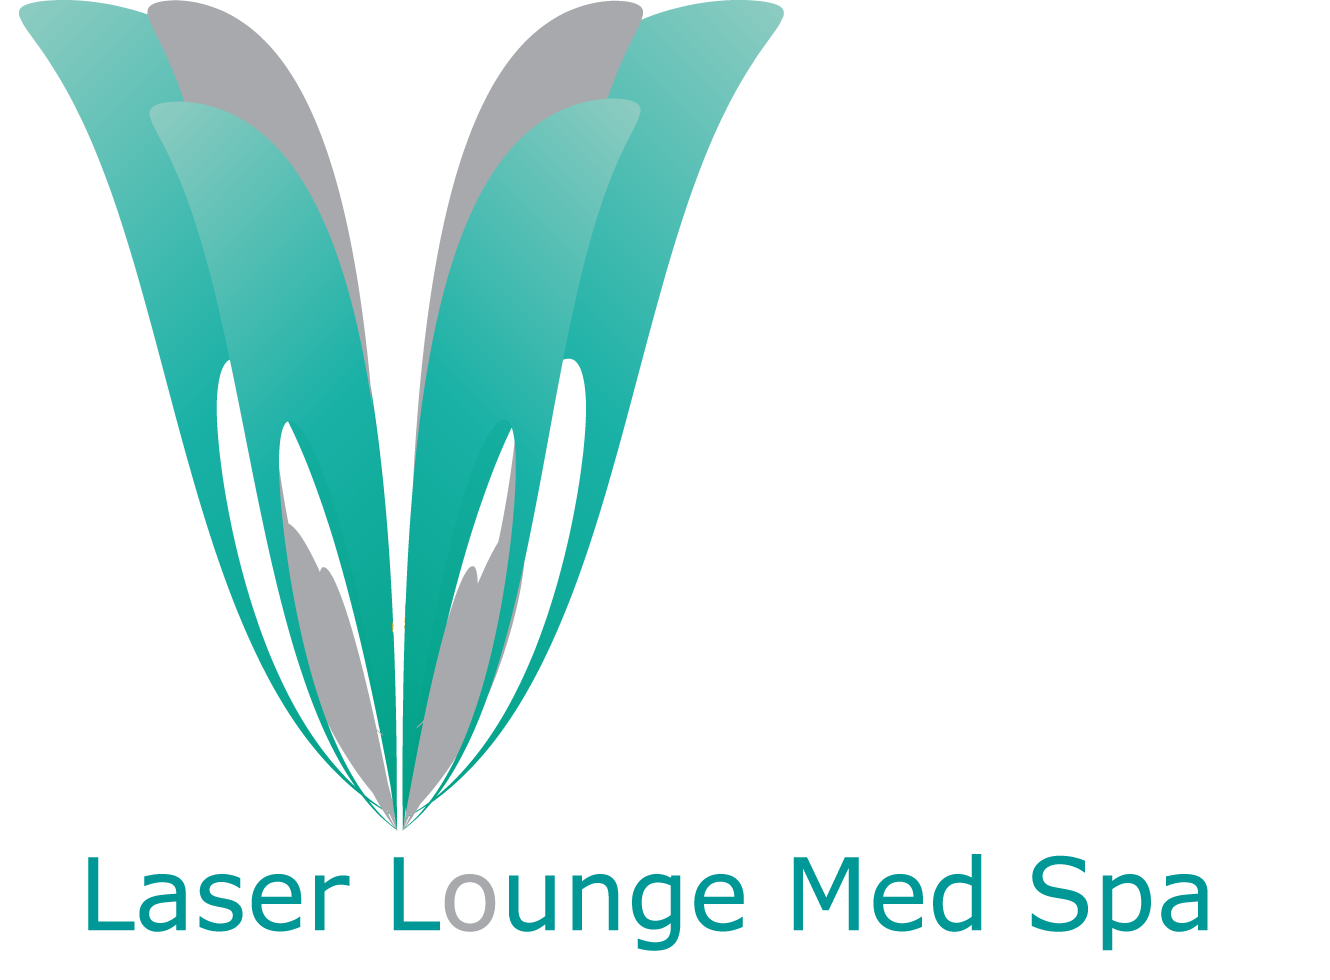 Laser Lounge Med Spa